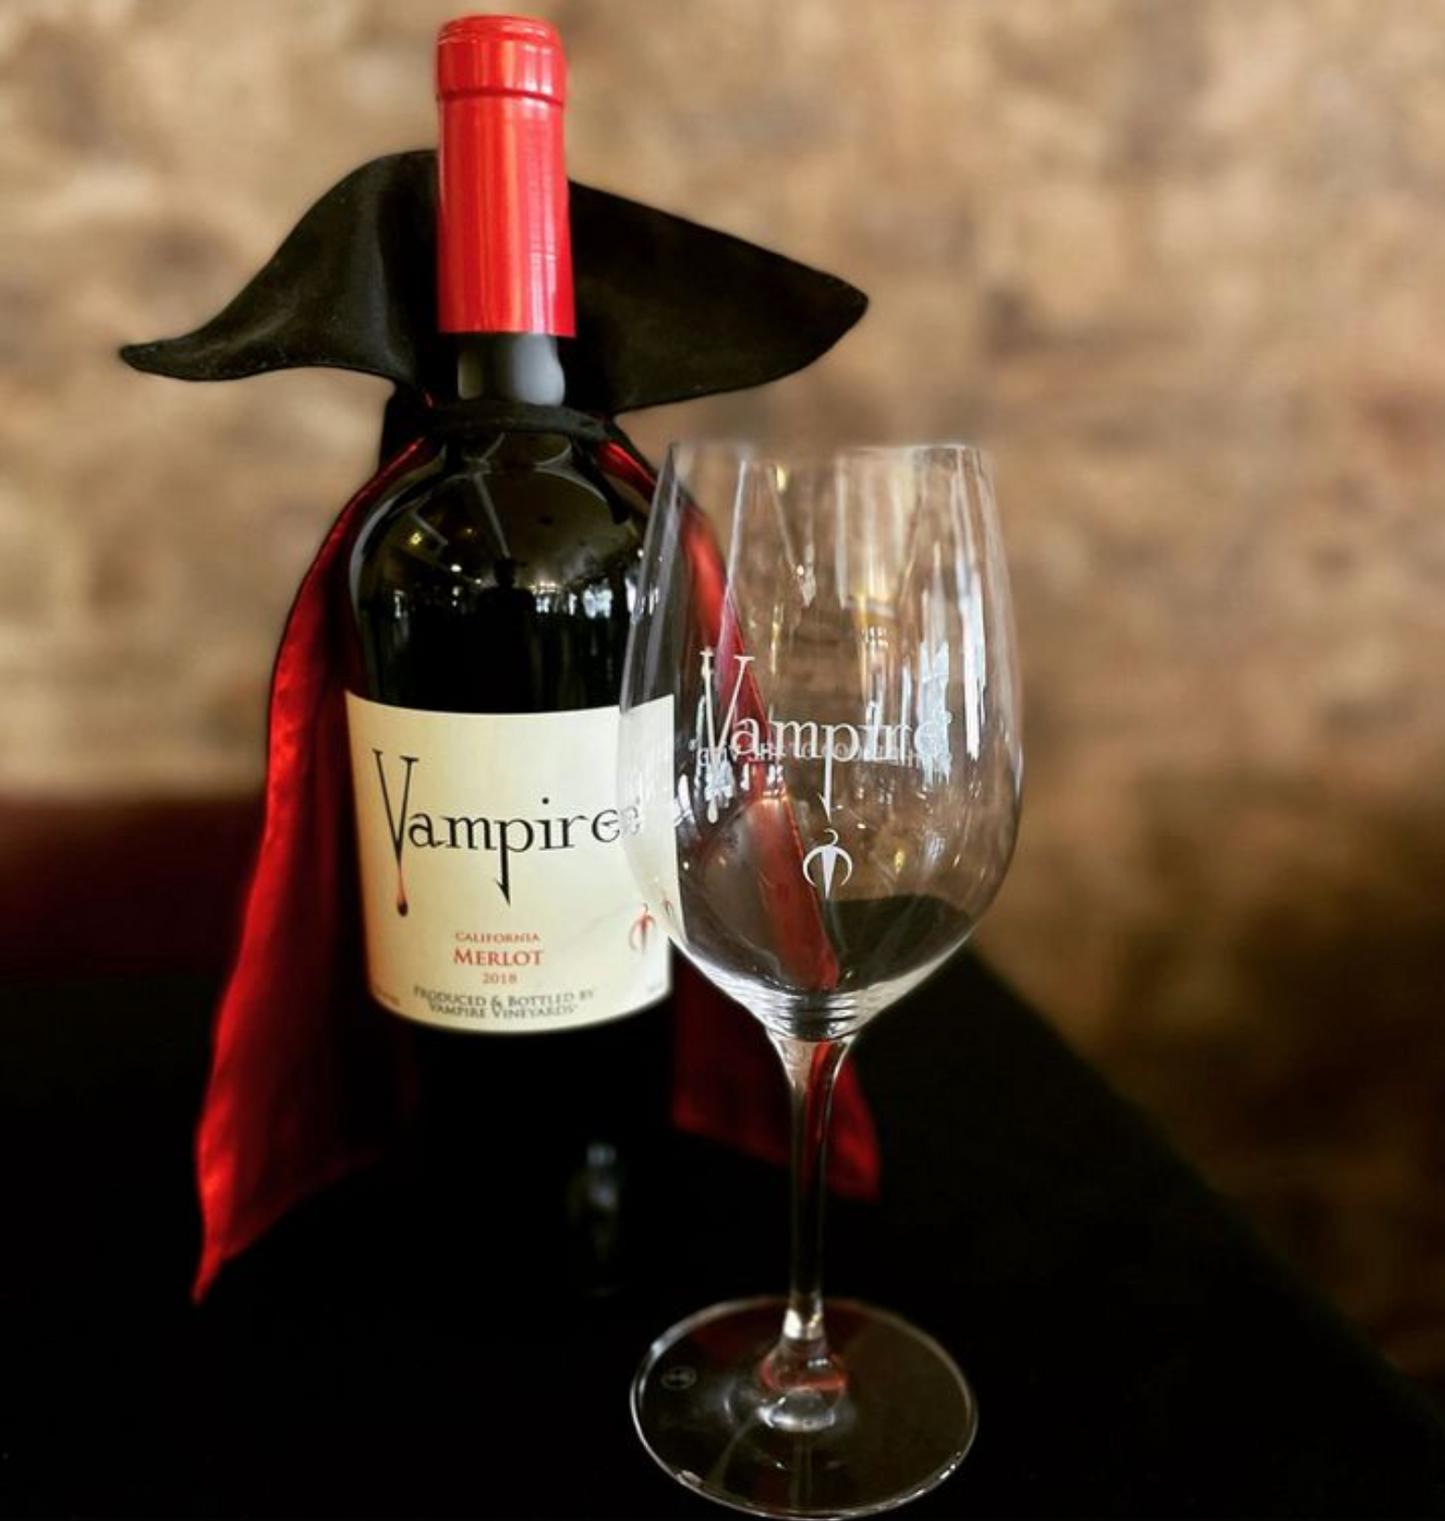 VAMPIRE® WINE GLASS PAIR